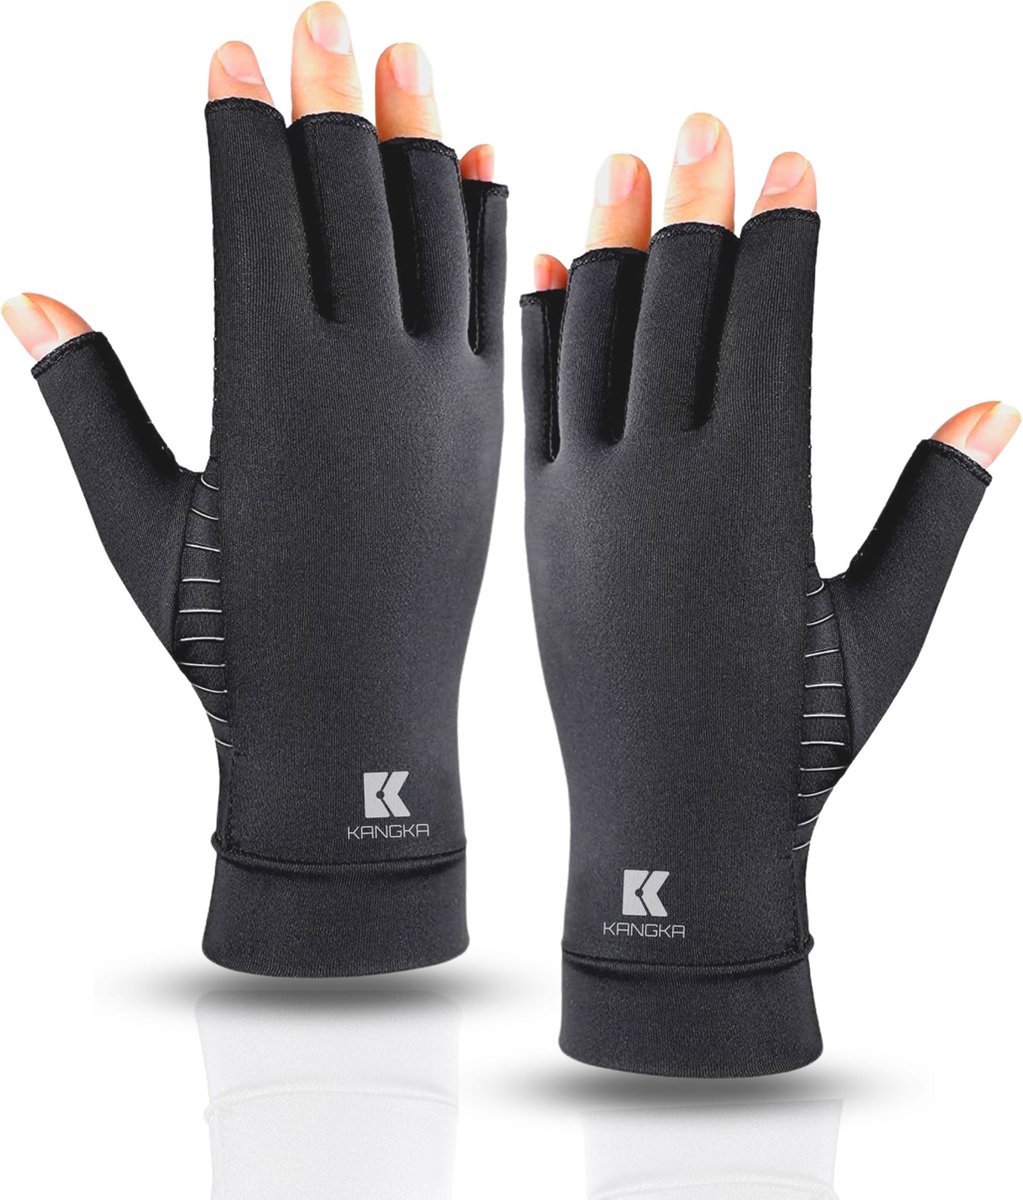 Kangka Reuma Compressie Handschoenen Maat S voor Artritis - Reuma - Artrose